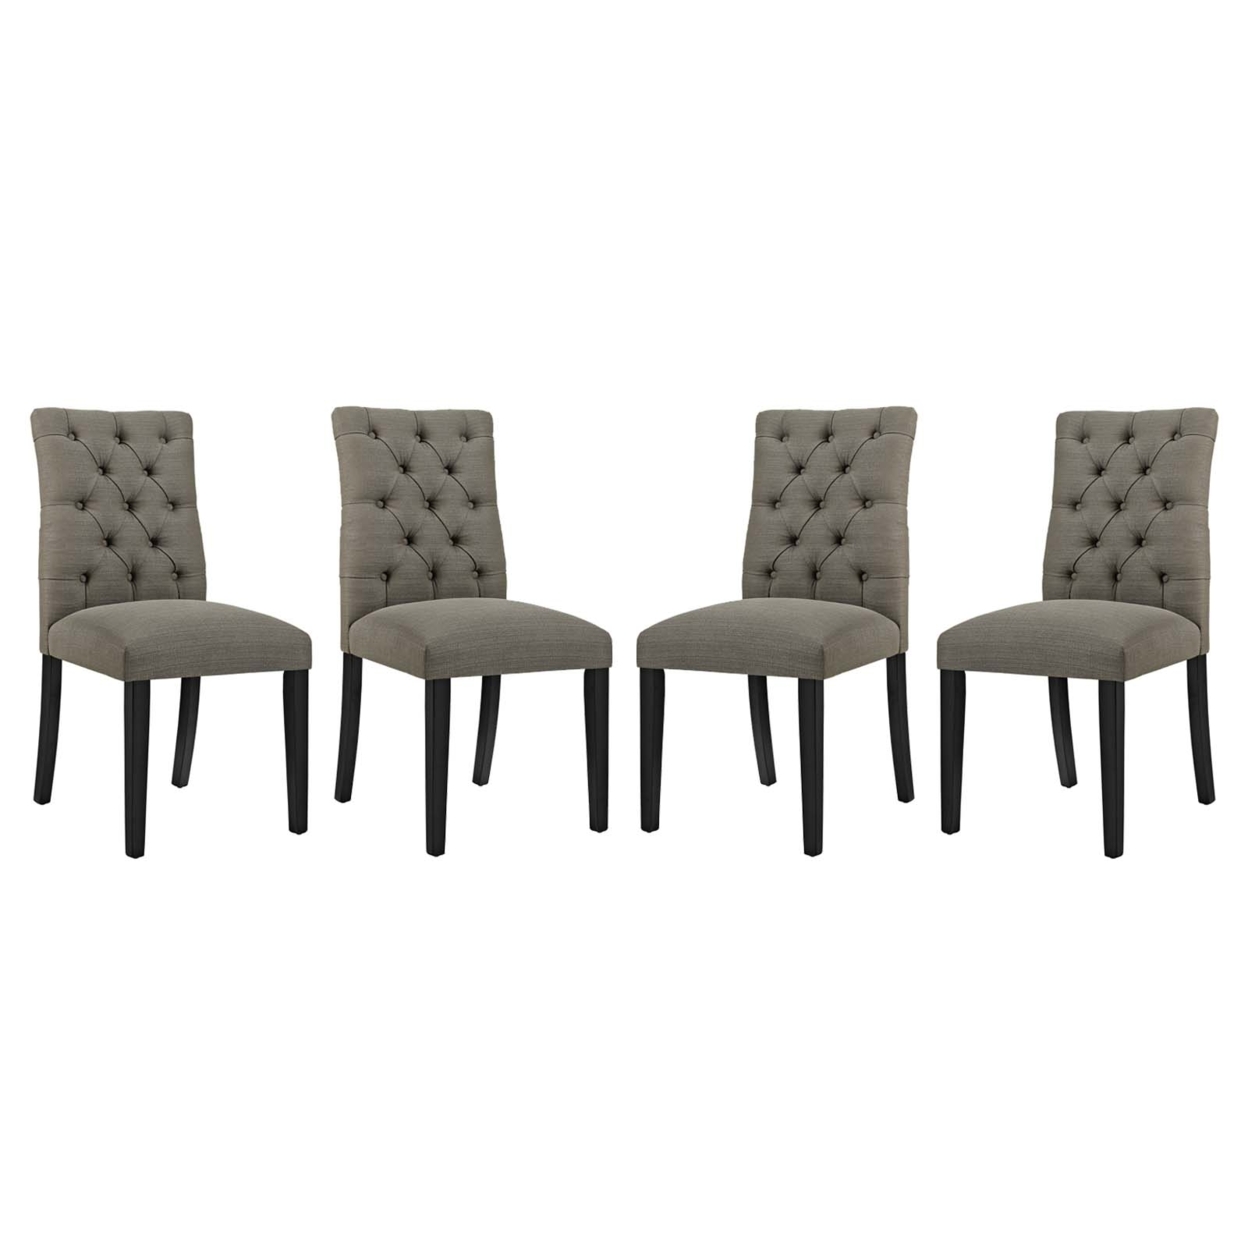 Duchess Dining Chair Fabric Set Of 4,Granite